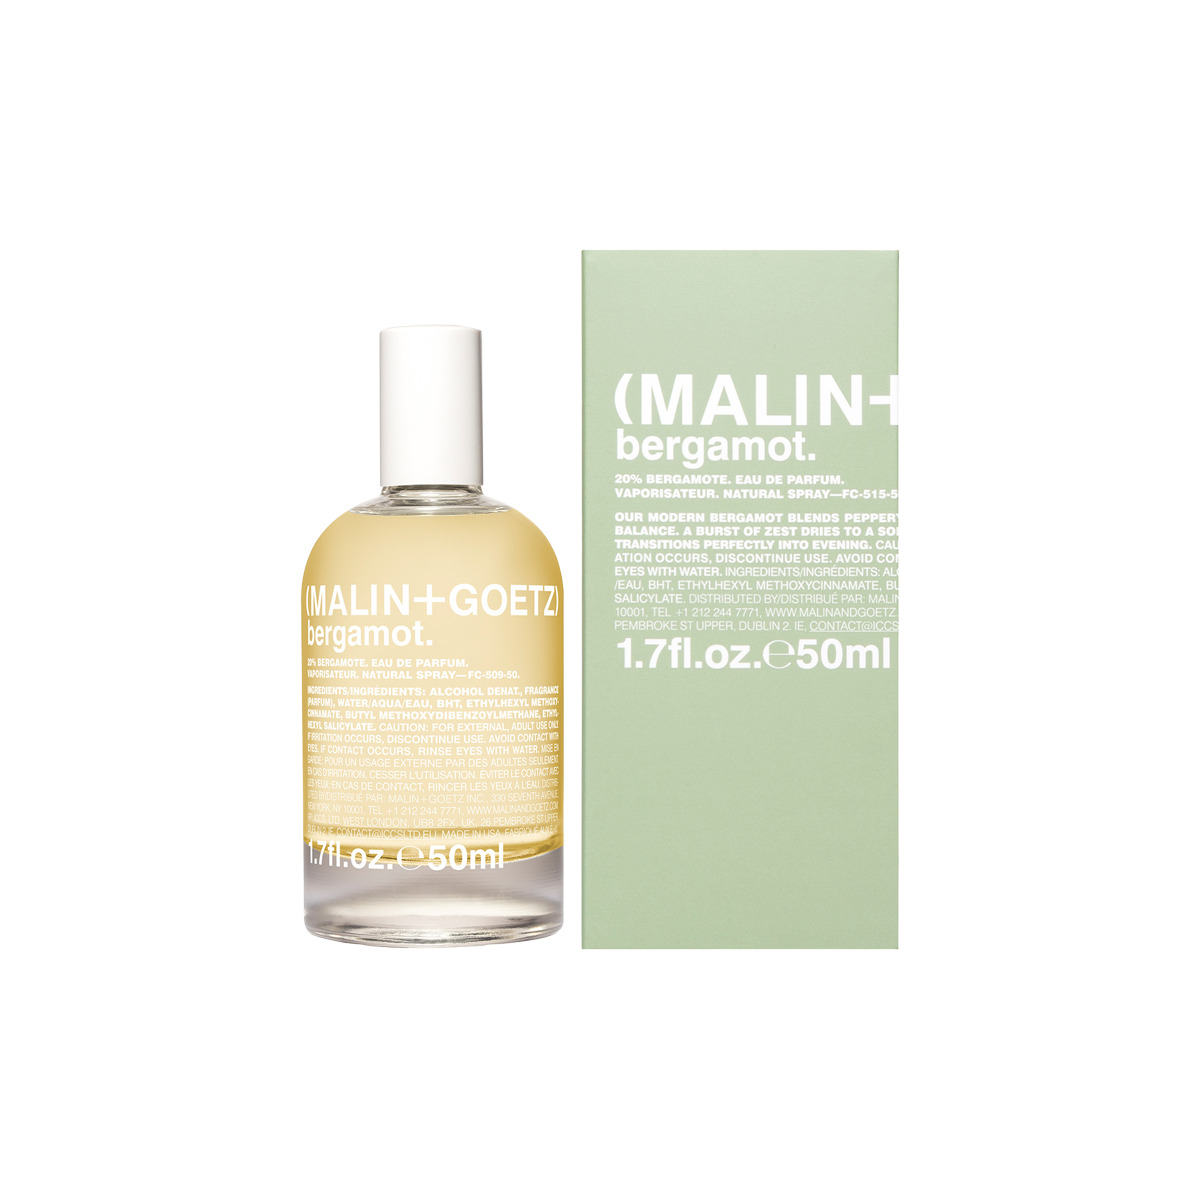 MALIN+GOETZ - Bergamot Eau de Parfum